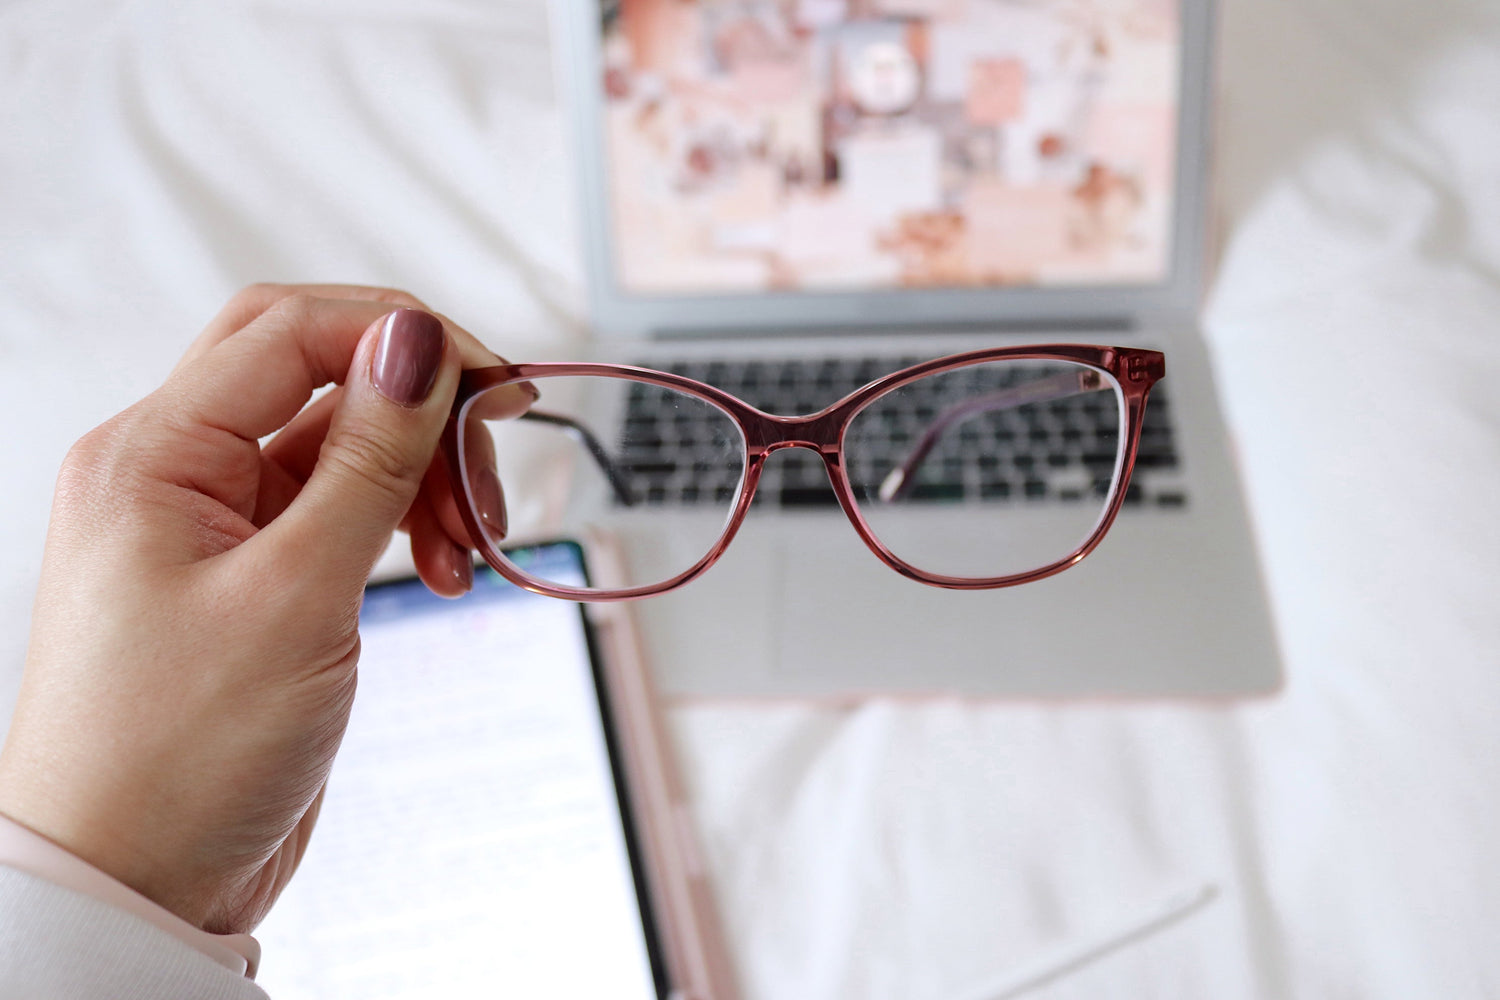 How Can I Test My Eyesight At Home? | KOALAEYE OPTICAL